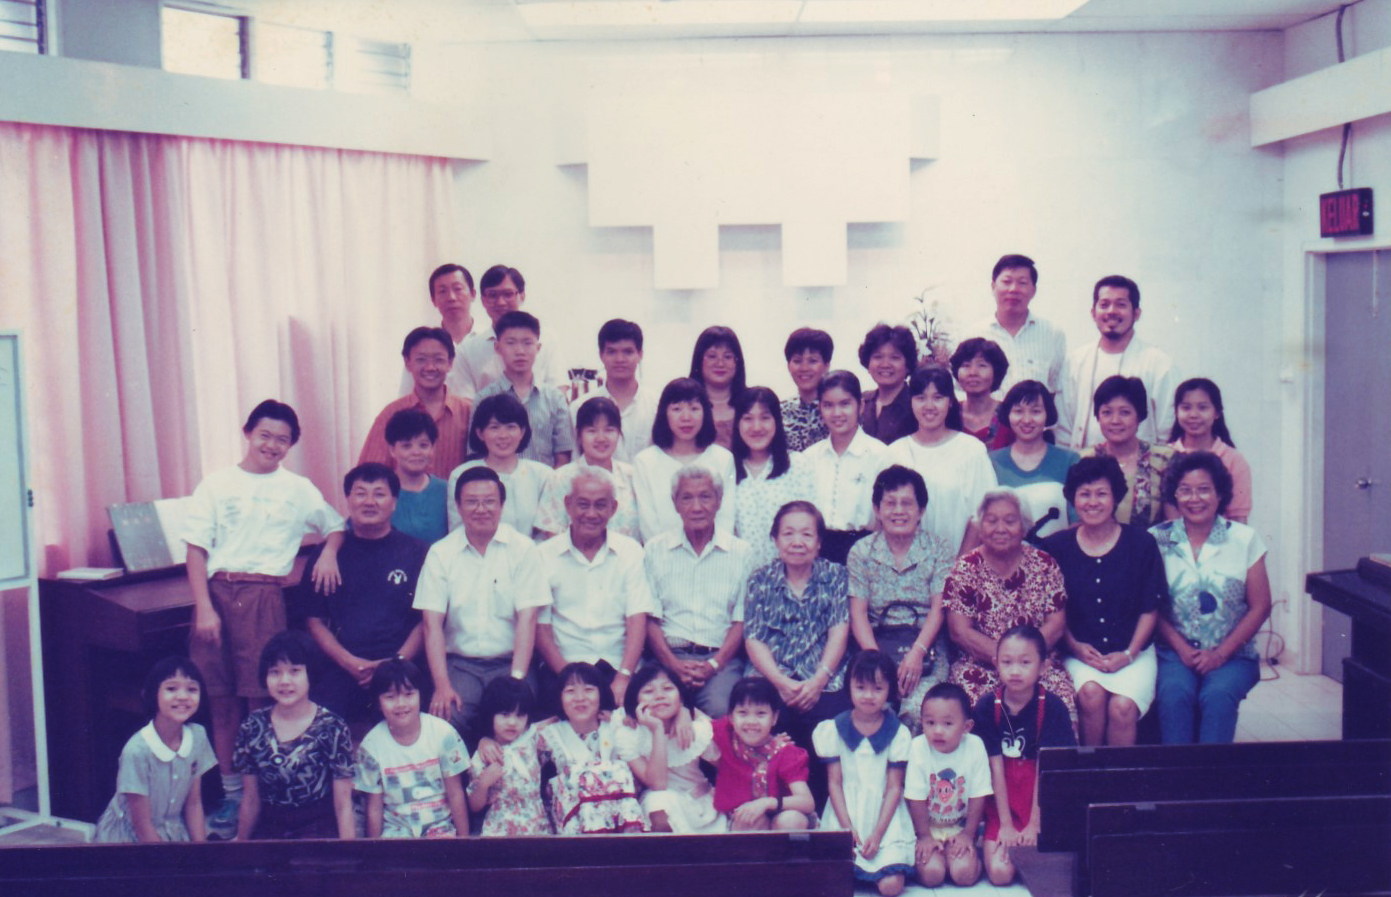 Penang Church 槟城教会 1994